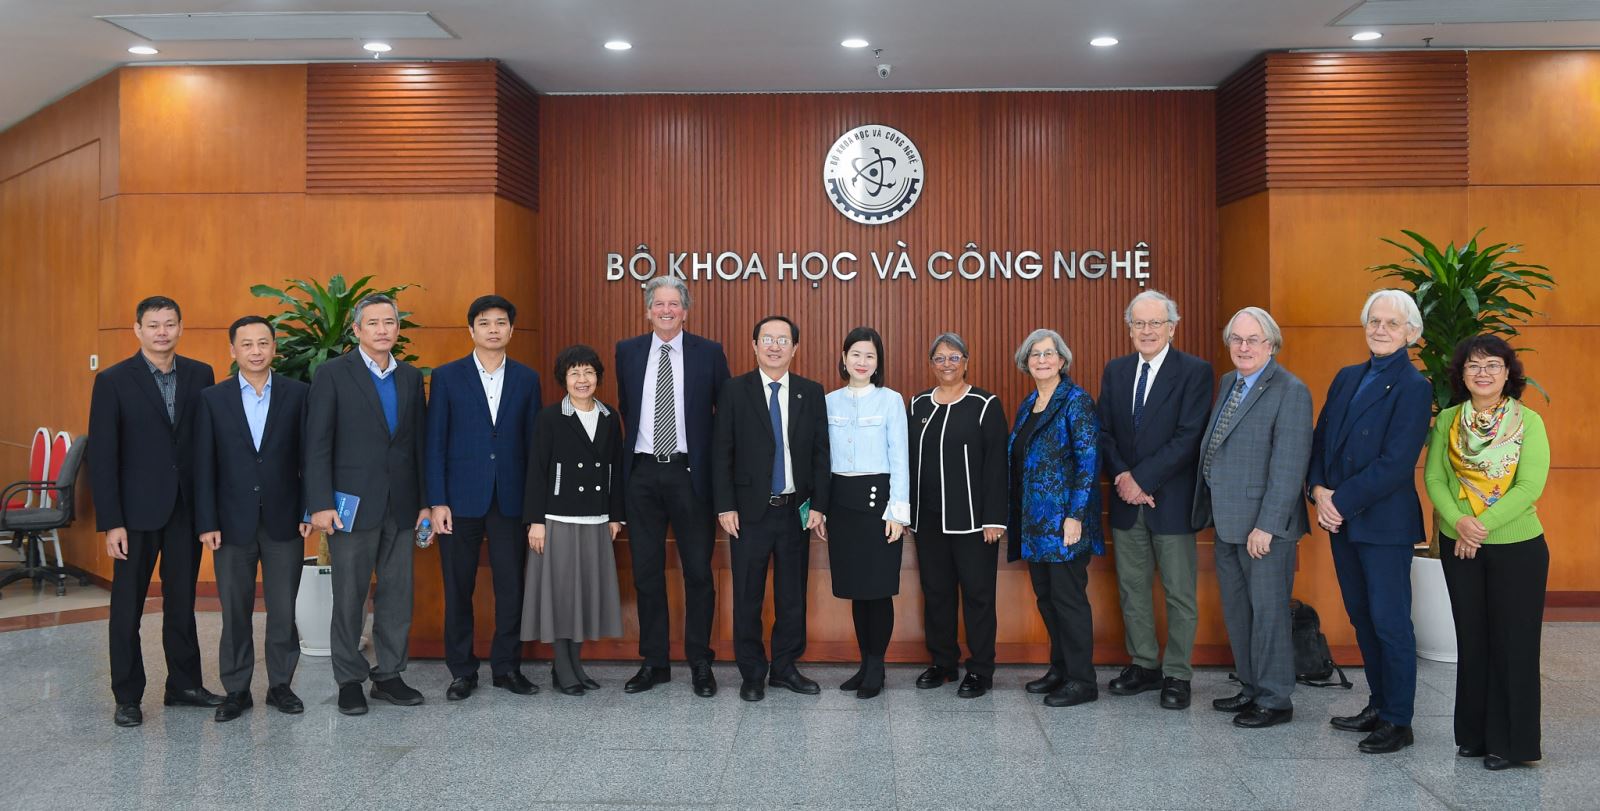 Bộ trưởng Bộ KHCN và các cán bộ lãnh đạo Bộ KHCN cùng đoàn các nhà khoa học hàng đầu thế giới của VinFuture trong buổi làm việc ngày 18/12